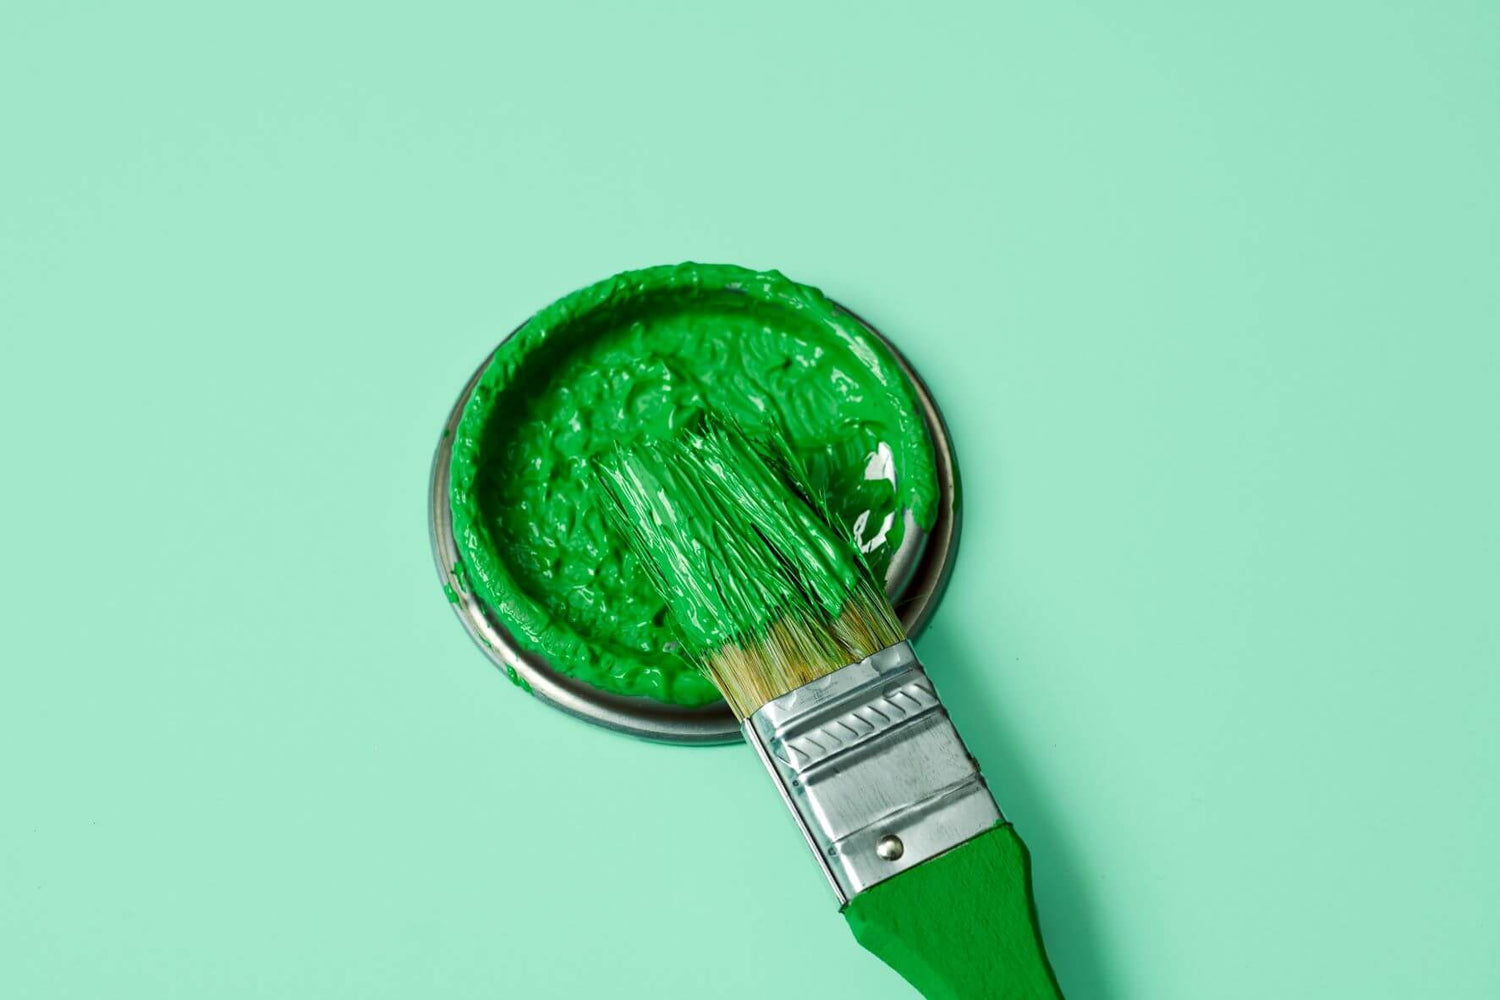 Verblidlichung von Greenwashing in Form von grünem Pinsel auf hellgrünem Grund